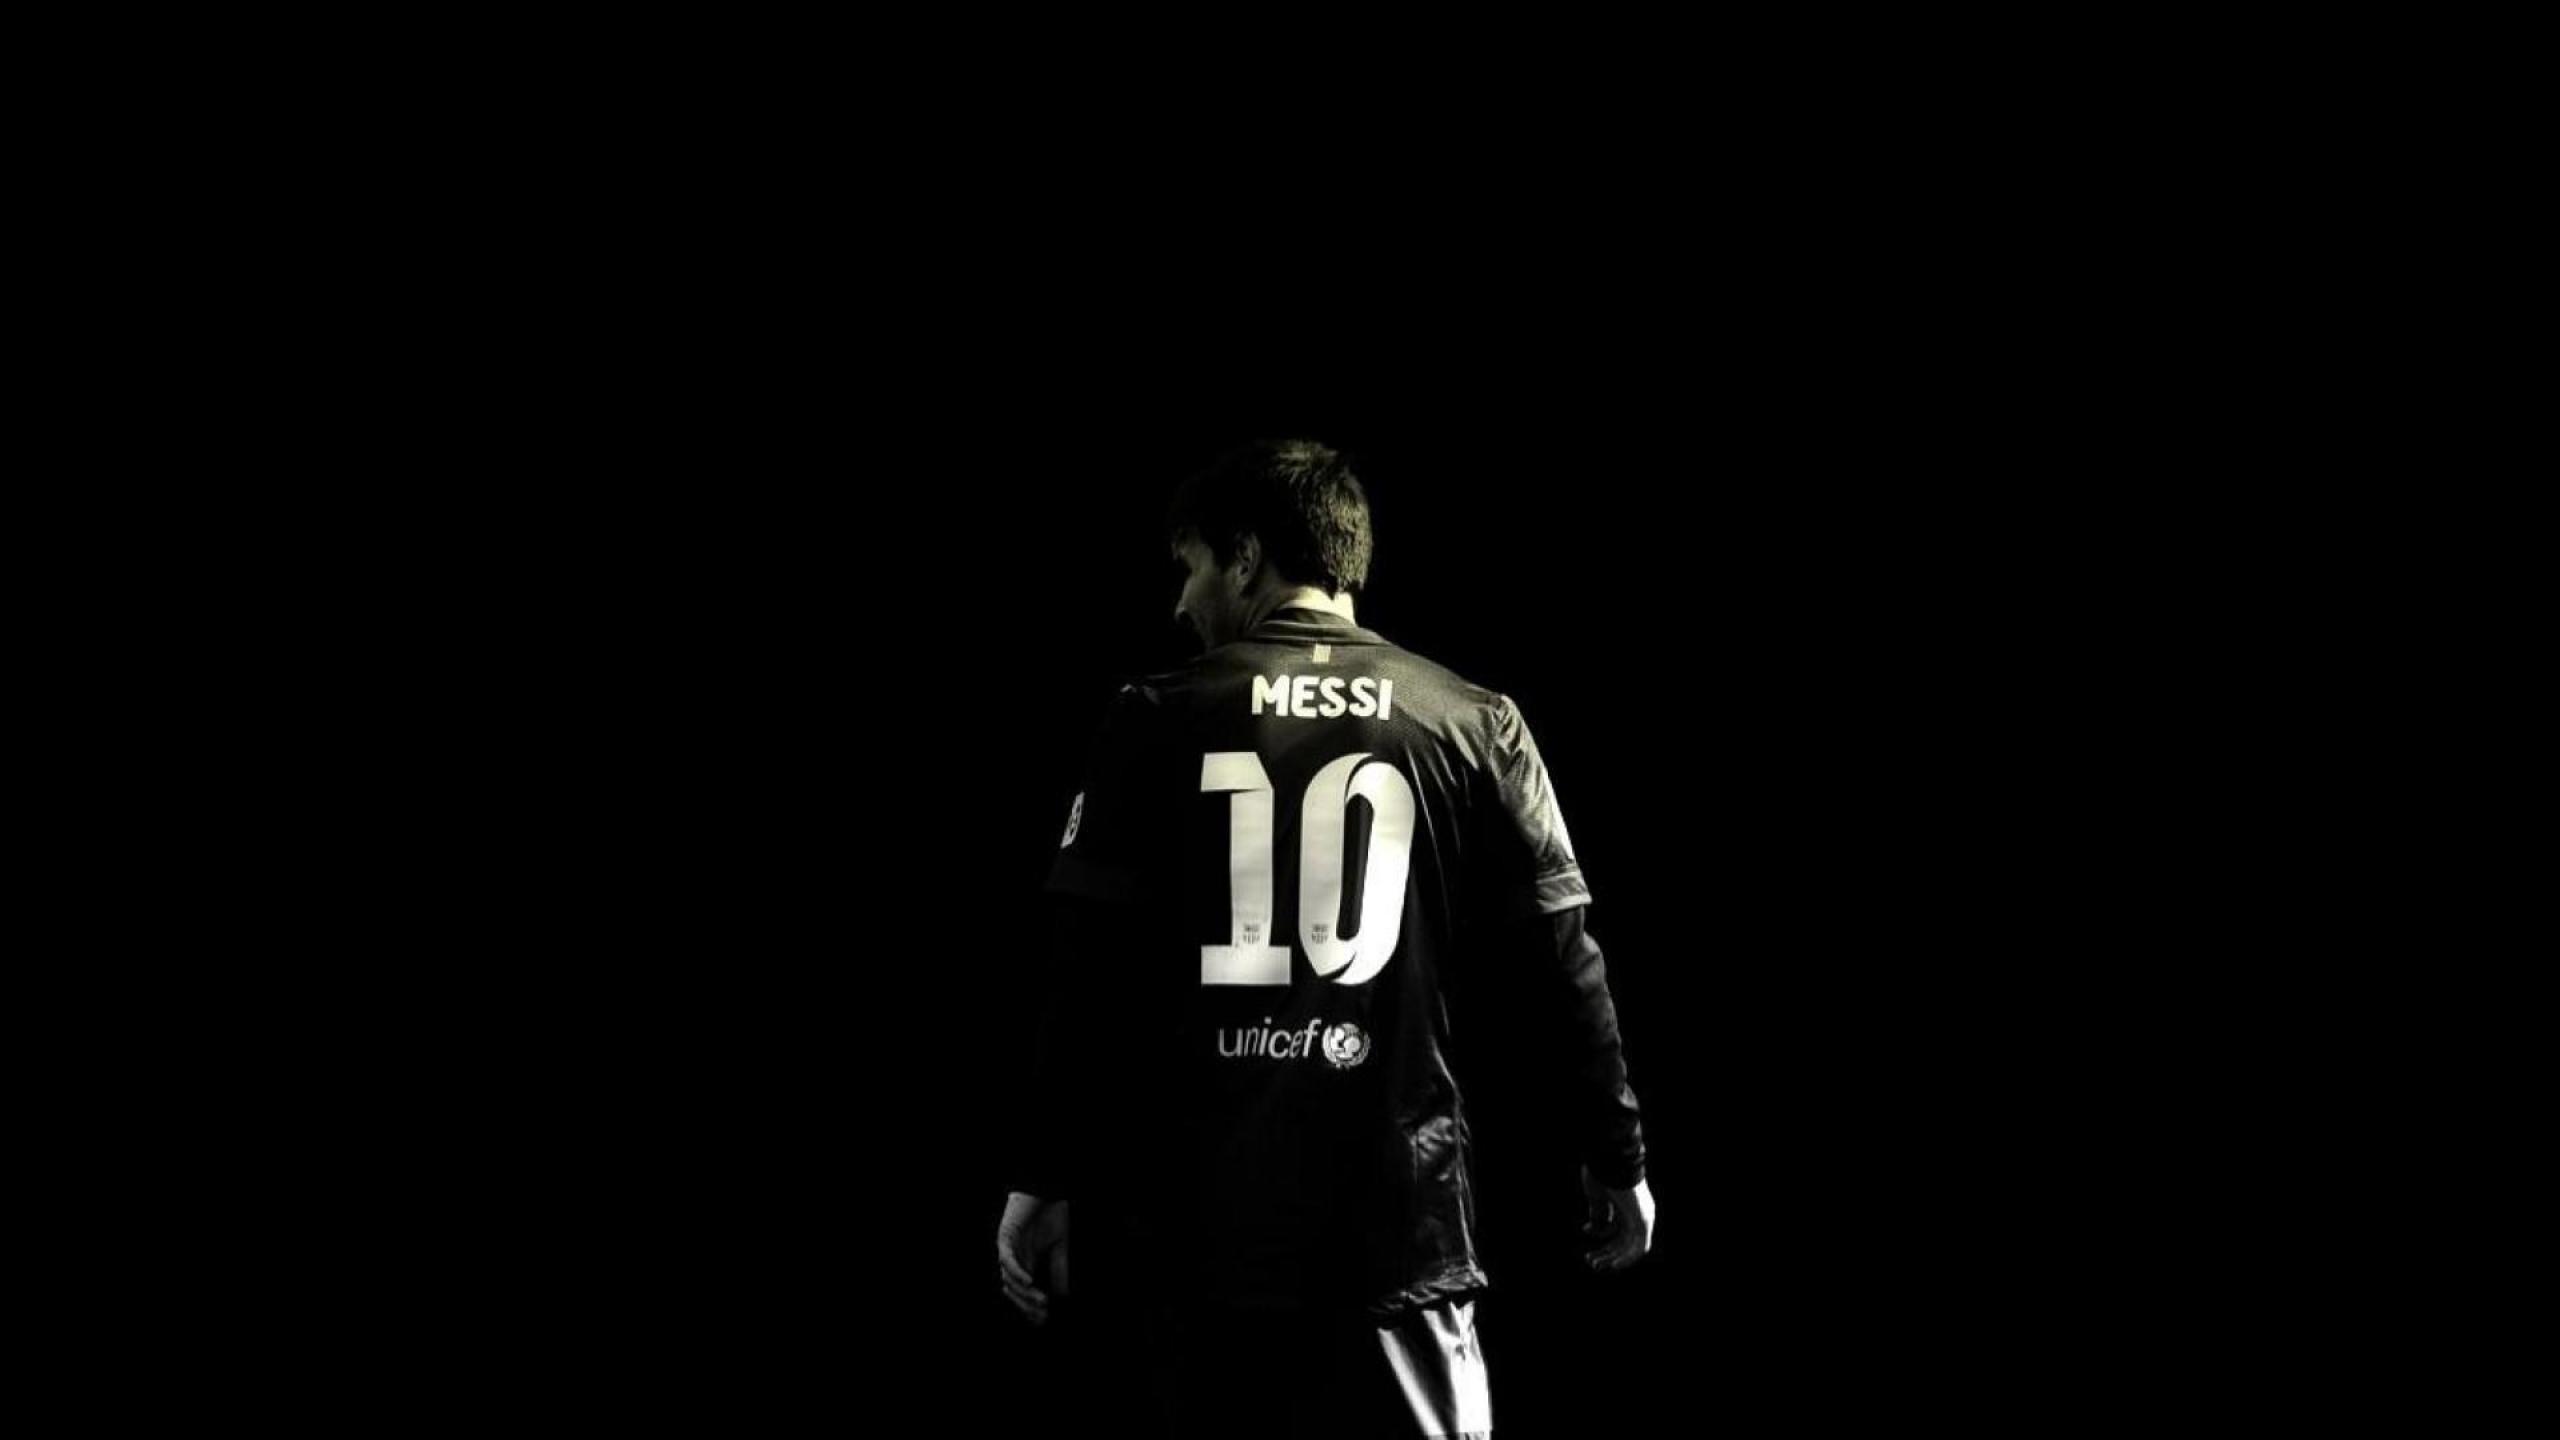 Nếu bạn thích màu đen hoặc muốn tạo ra một không gian làm việc lạnh lùng, thì hãy xem Messi Black Wallpaper. Hình nền đen chủ đề với hình ảnh sắc nét của Messi sẽ giúp bạn tạo ra một không gian đẹp mắt và mát mẻ.